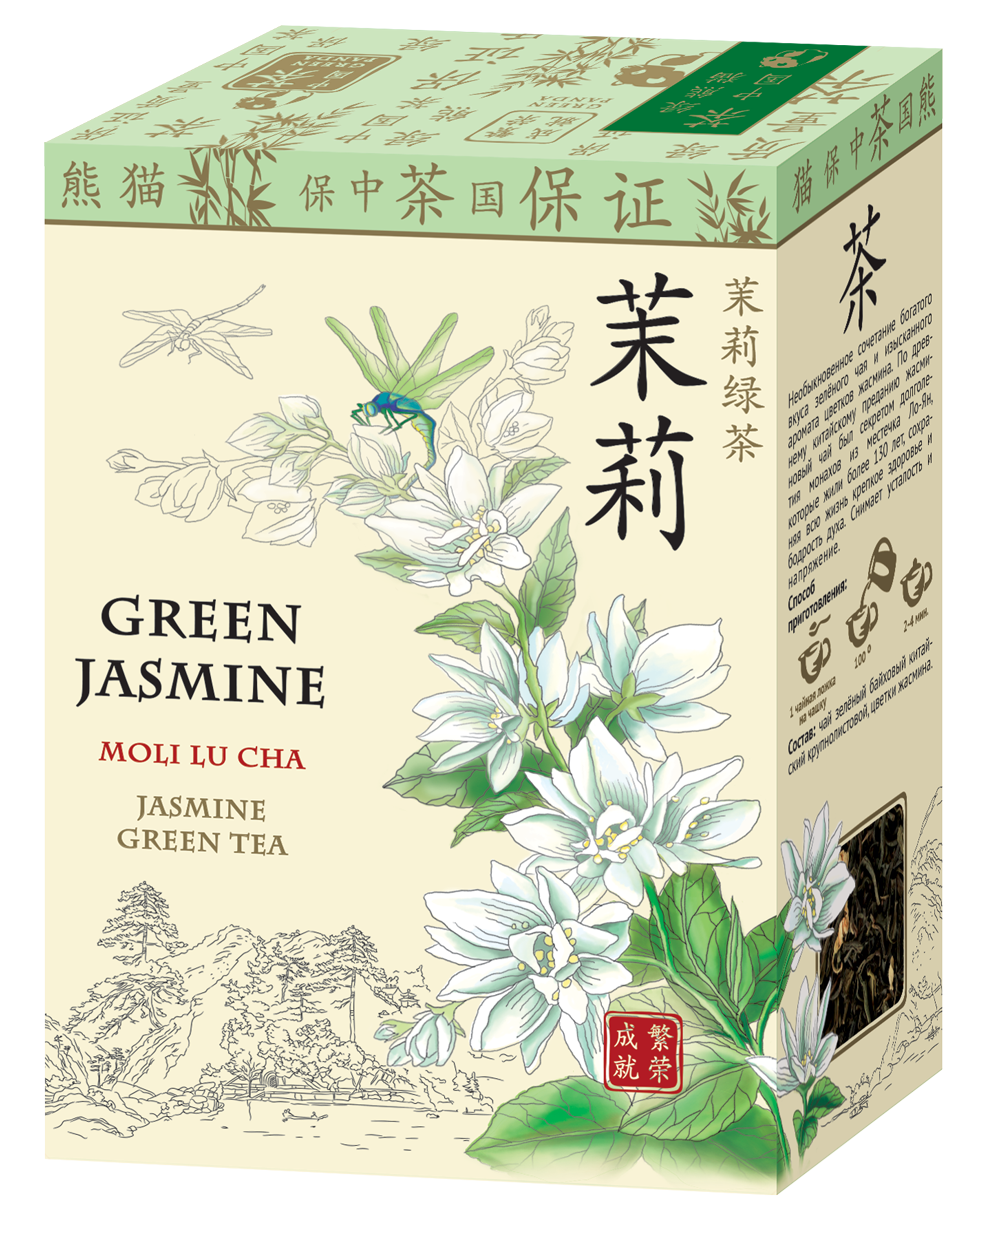 Китайский чай с жасмином. Зеленый жасминовый чай китайский. Китайский зеленый чай с жасмином. Чай зелёный китайский ча Бао Люй ча 100г. Китайский чай с жасмином в зеленой упаковке.